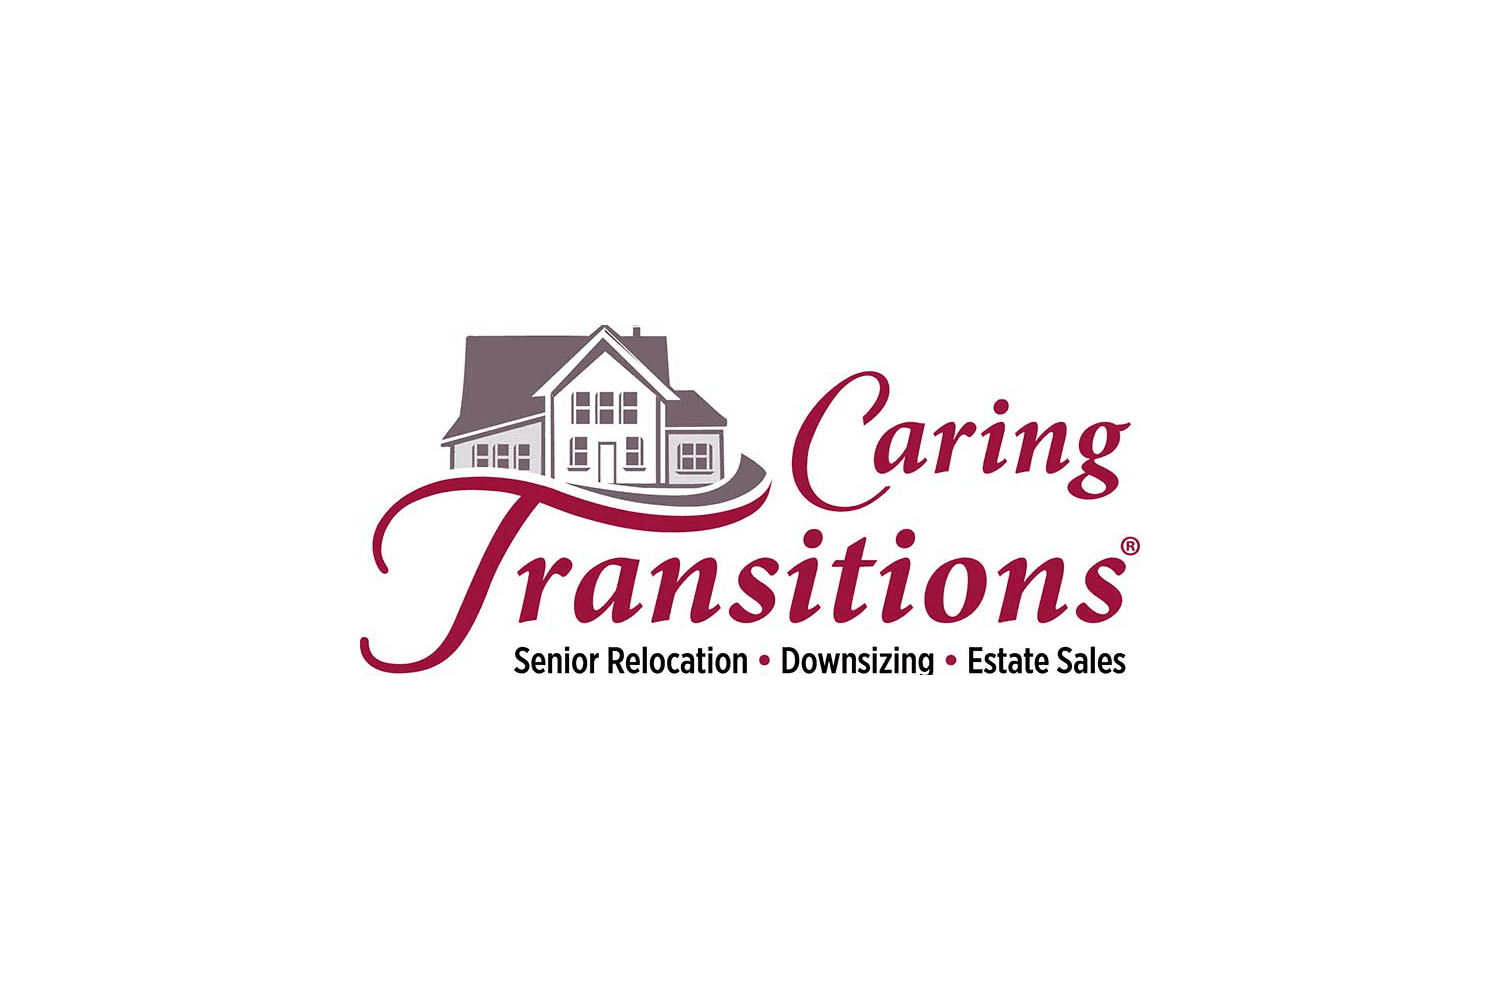 Logotipo da Caring Transitions em vermelho com a imagem de uma casa marrom